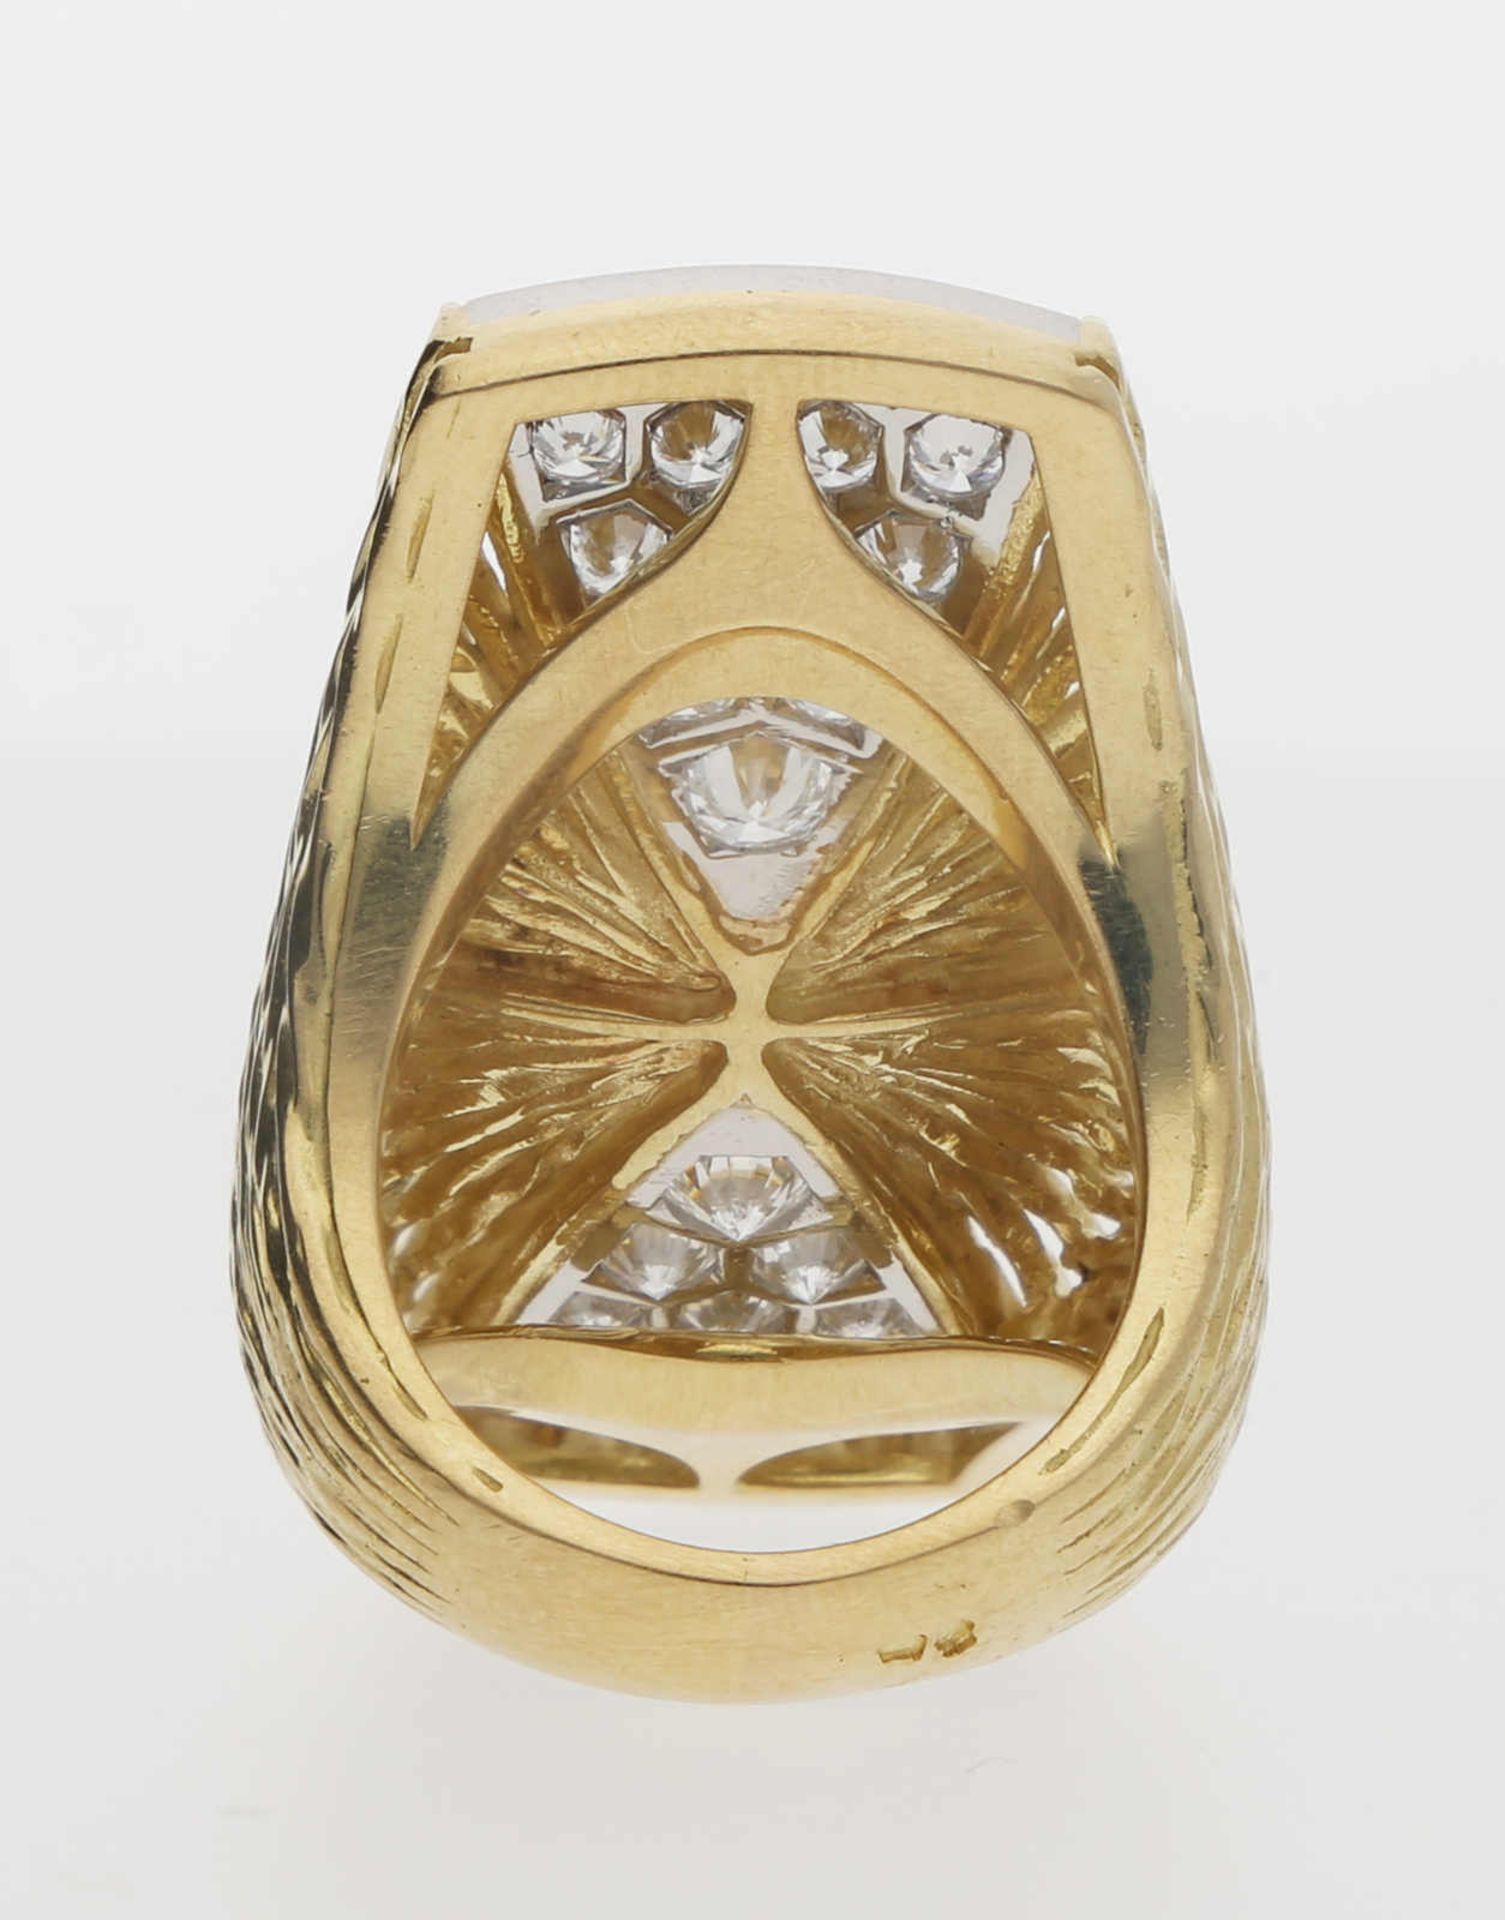 Piaget-Ring Extravaganter Piaget-Ring in Gelbgold/Weissgold 18K mit feinsten Brillanten von zus. ca. - Image 3 of 3